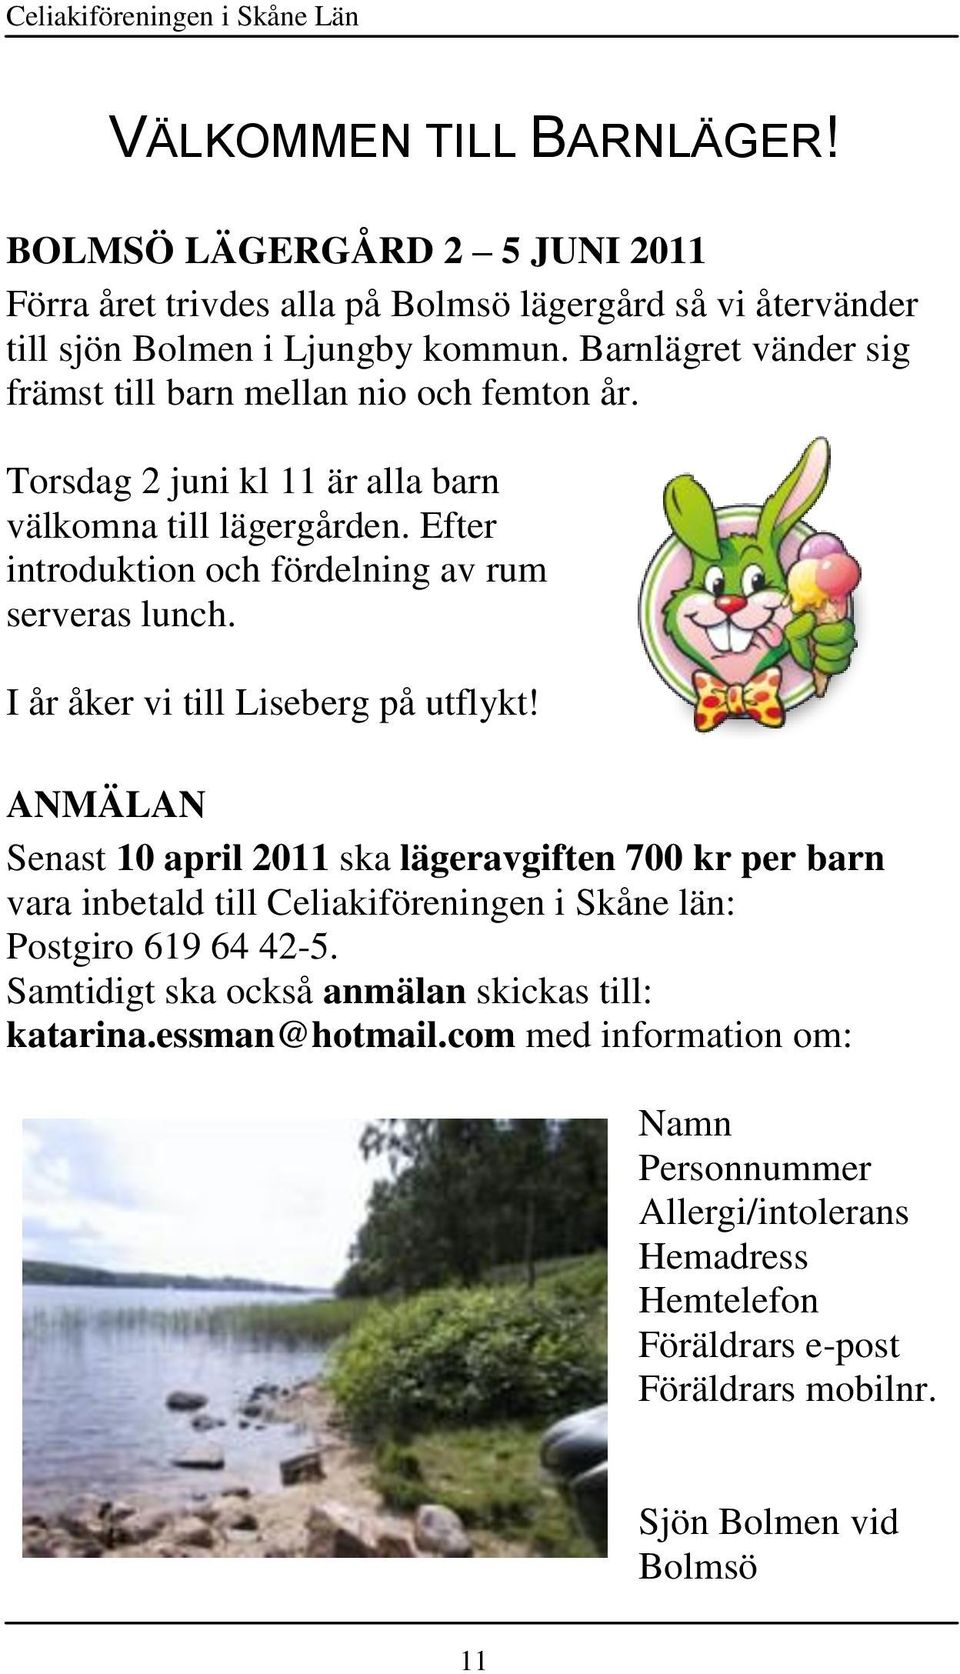 I år åker vi till Liseberg på utflykt! ANMÄLAN Senast 10 april 2011 ska lägeravgiften 700 kr per barn vara inbetald till Celiakiföreningen i Skåne län: Postgiro 619 64 42-5.